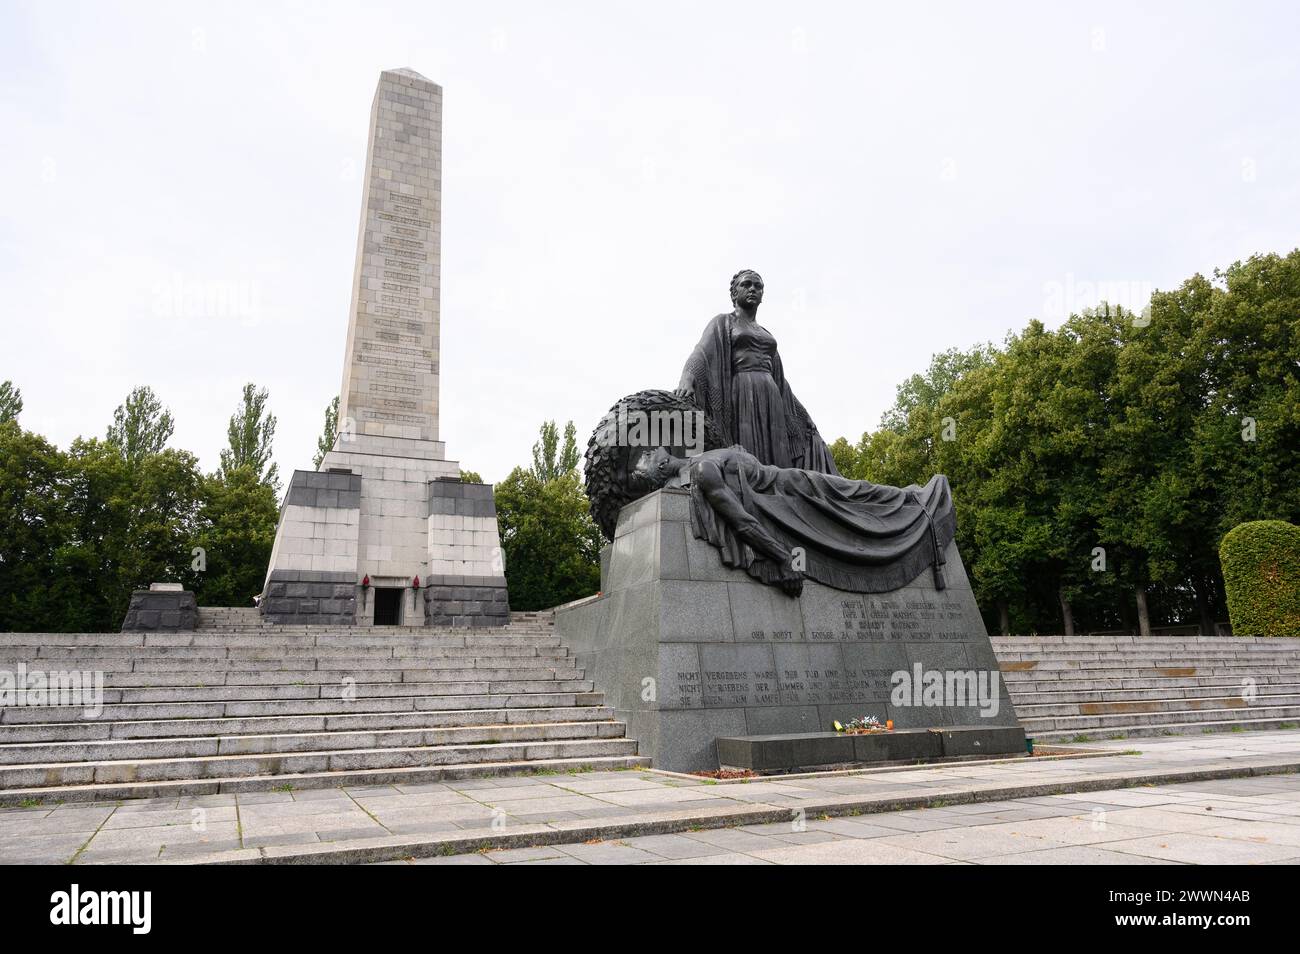 Berlin. Germany. The Soviet War Memorial in Schönholzer Heide (Sowjetisches Ehrenmal in der Schönholzer Heide).  Mother Russia mourning a fallen soldi Stock Photo